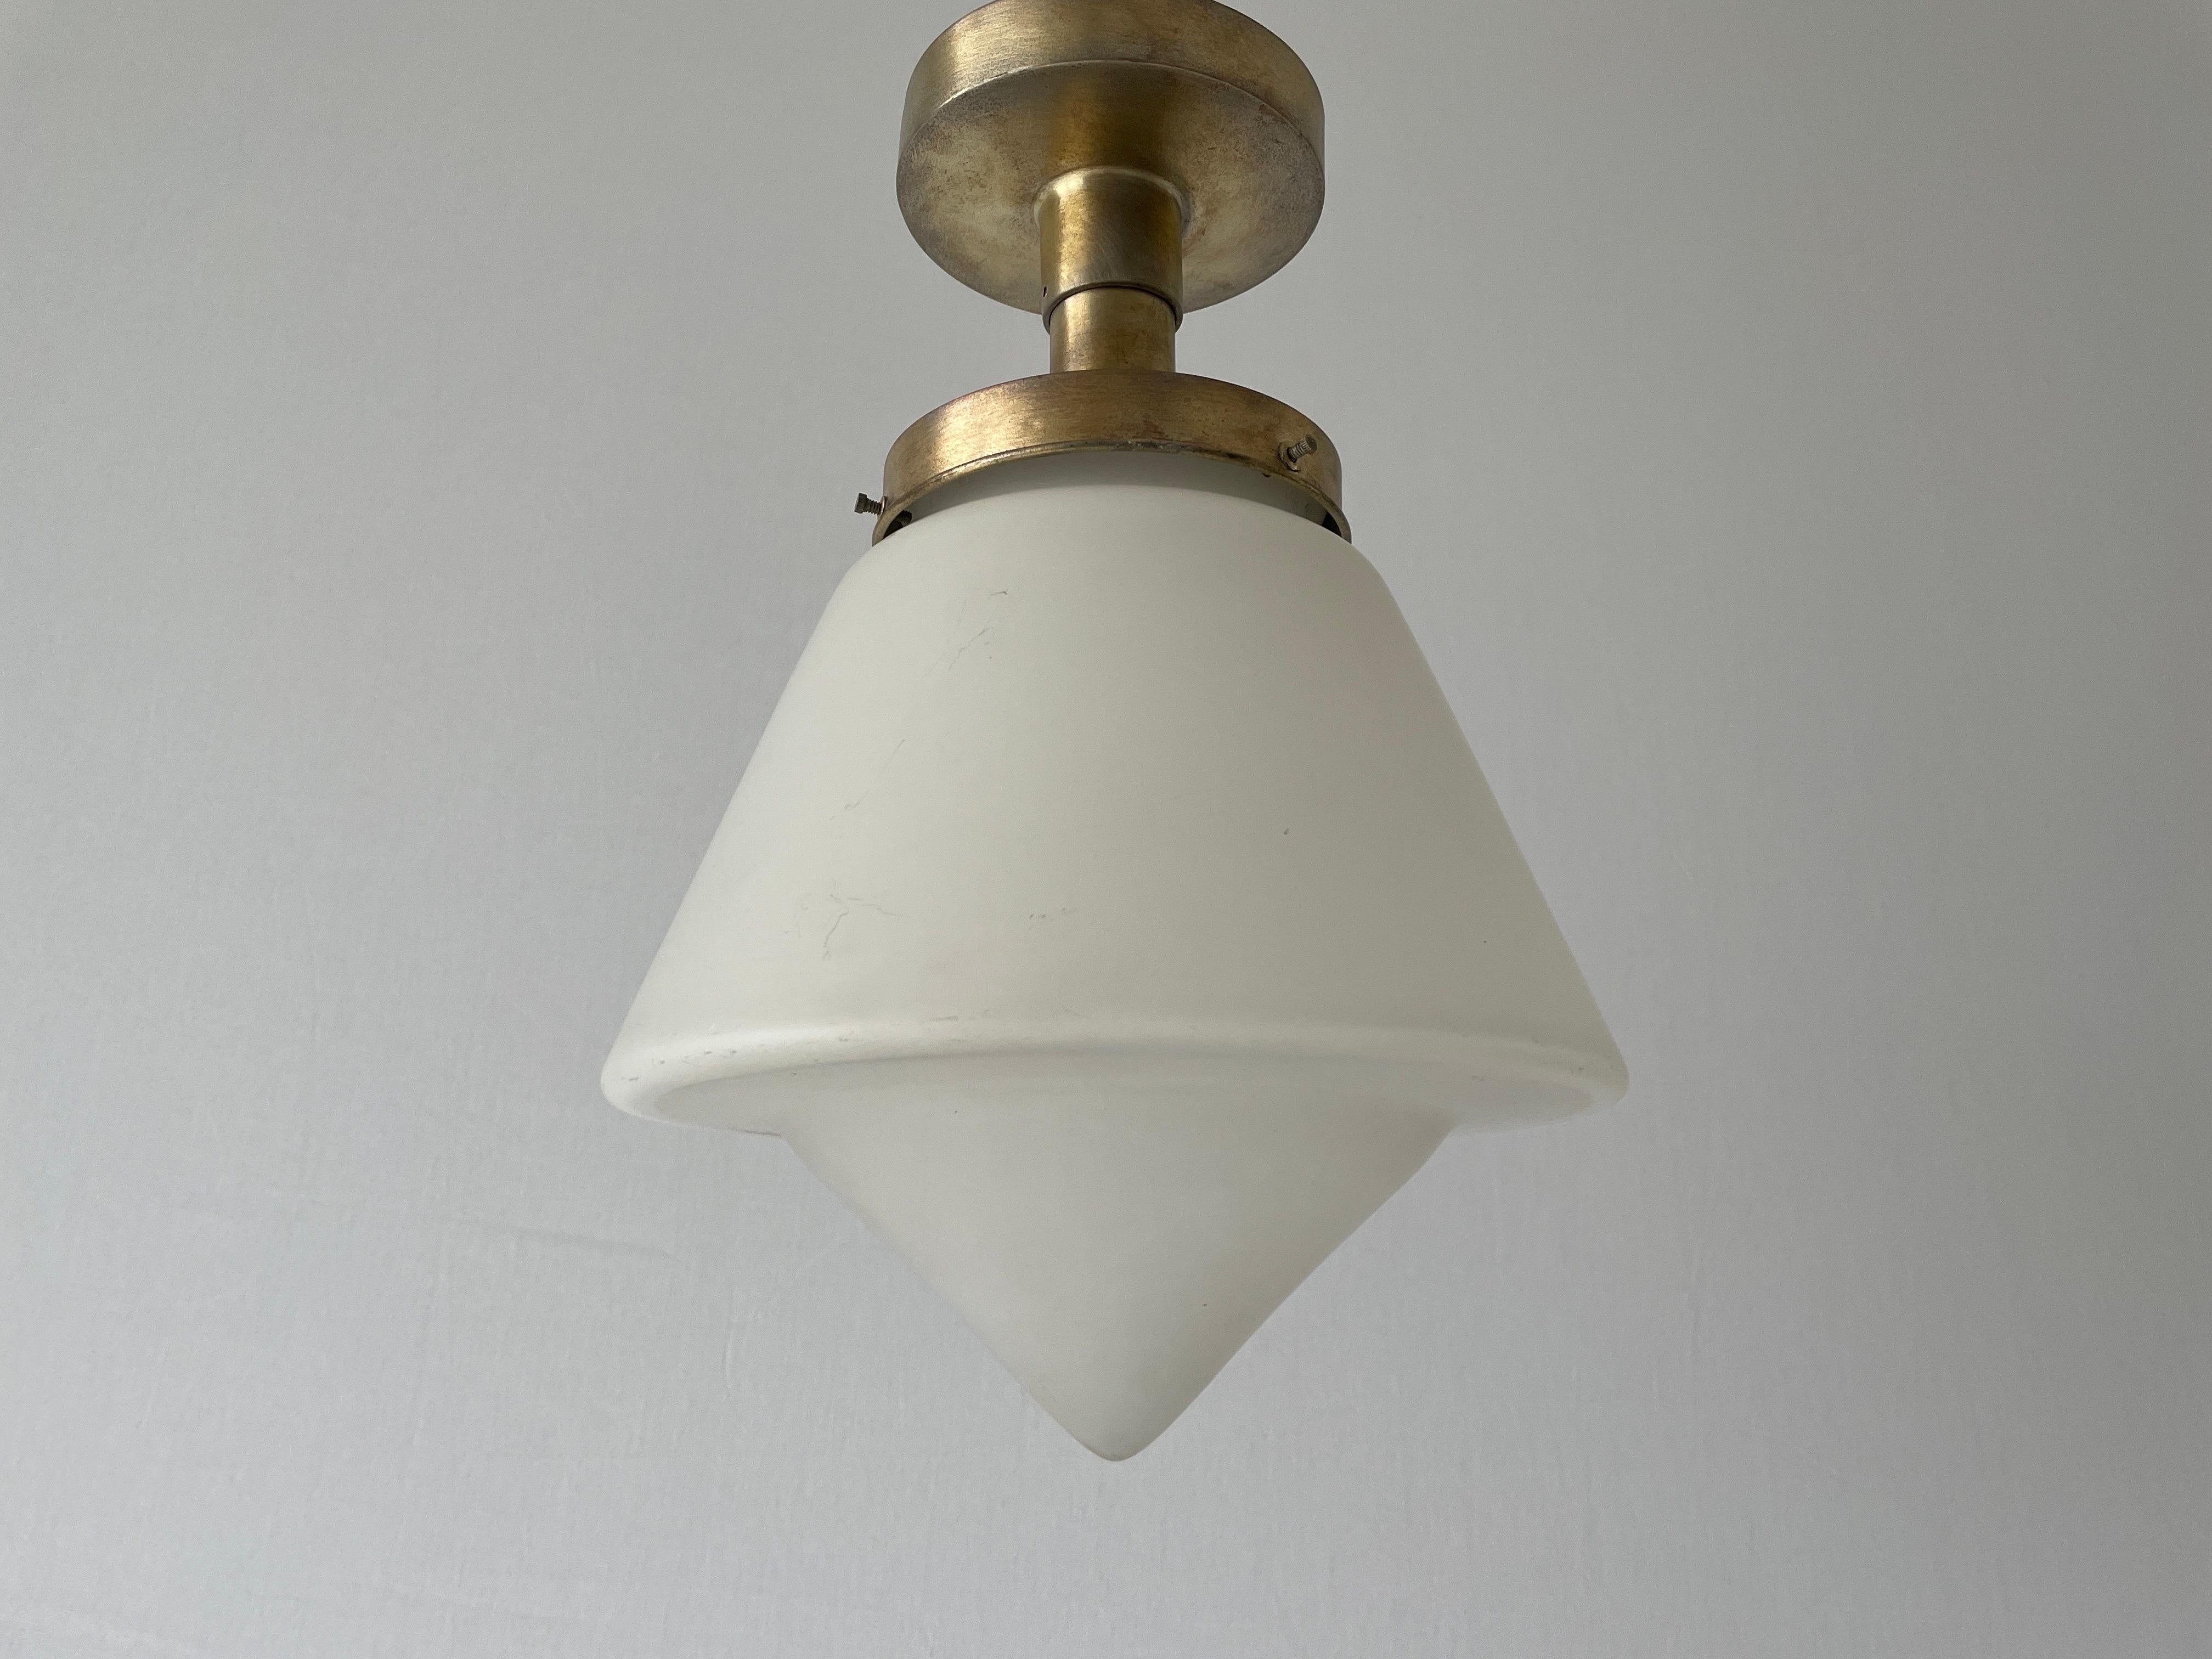 Art-Déco-Deckenleuchte, Einbaubeleuchtung, 1940er Jahre, Deutschland

Diese Lampe funktioniert mit einer E27-Glühbirne.

Abmessungen: 
Höhe: 35cm
Höhe und Durchmesser des Schirms: 22 cm und 24 cm
Sockel: 12 cm

